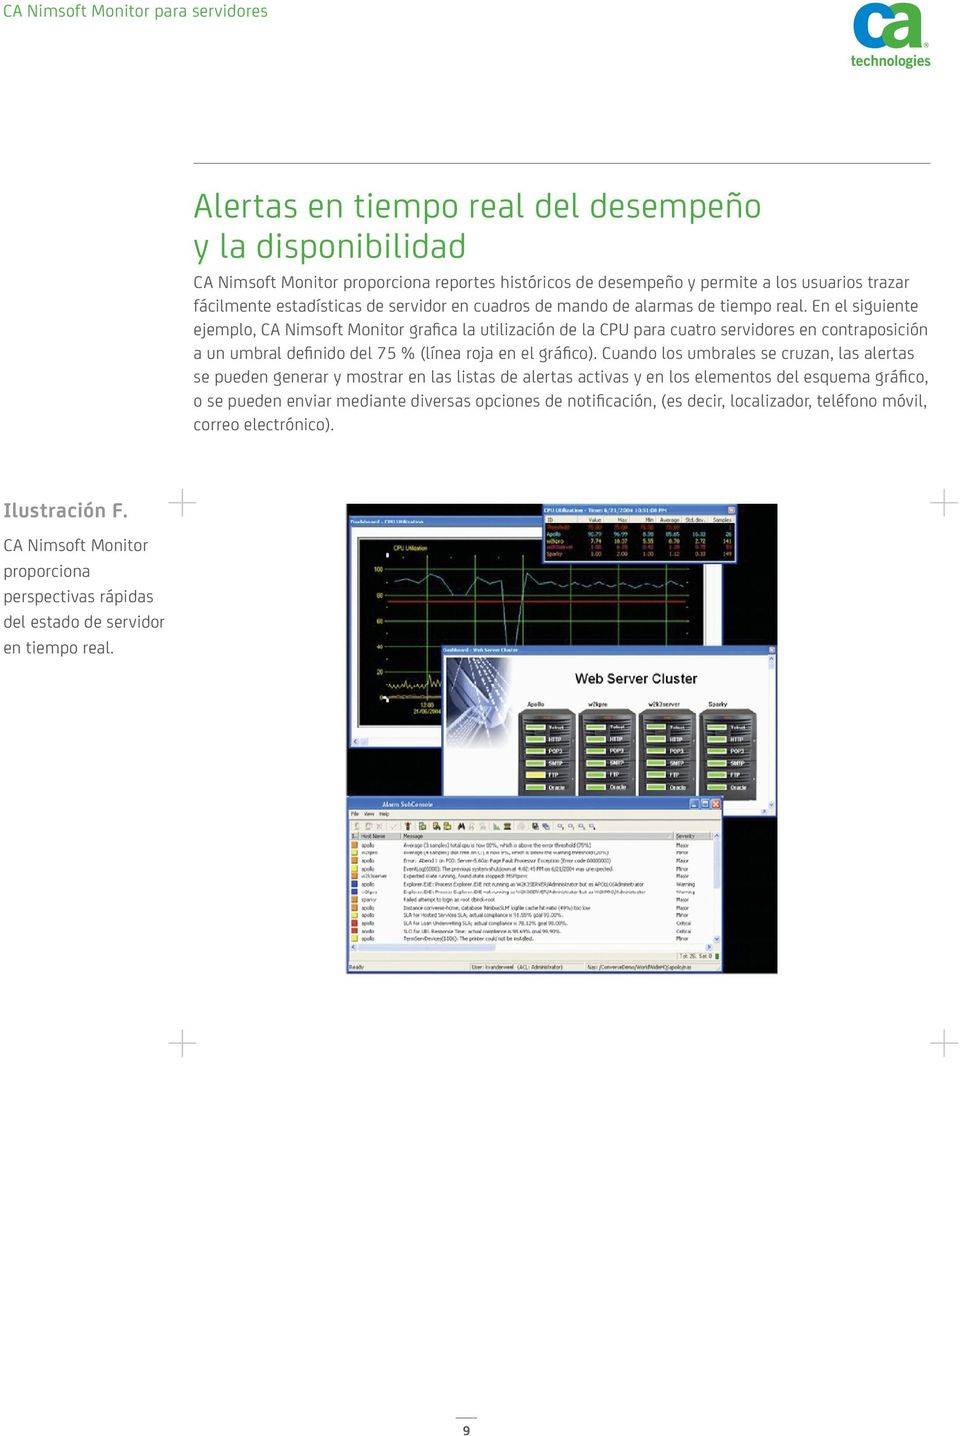 En el siguiente ejemplo, CA Nimsoft Monitor grafica la utilización de la CPU para cuatro servidores en contraposición a un umbral deﬁnido del 75 % (línea roja en el gráfico).